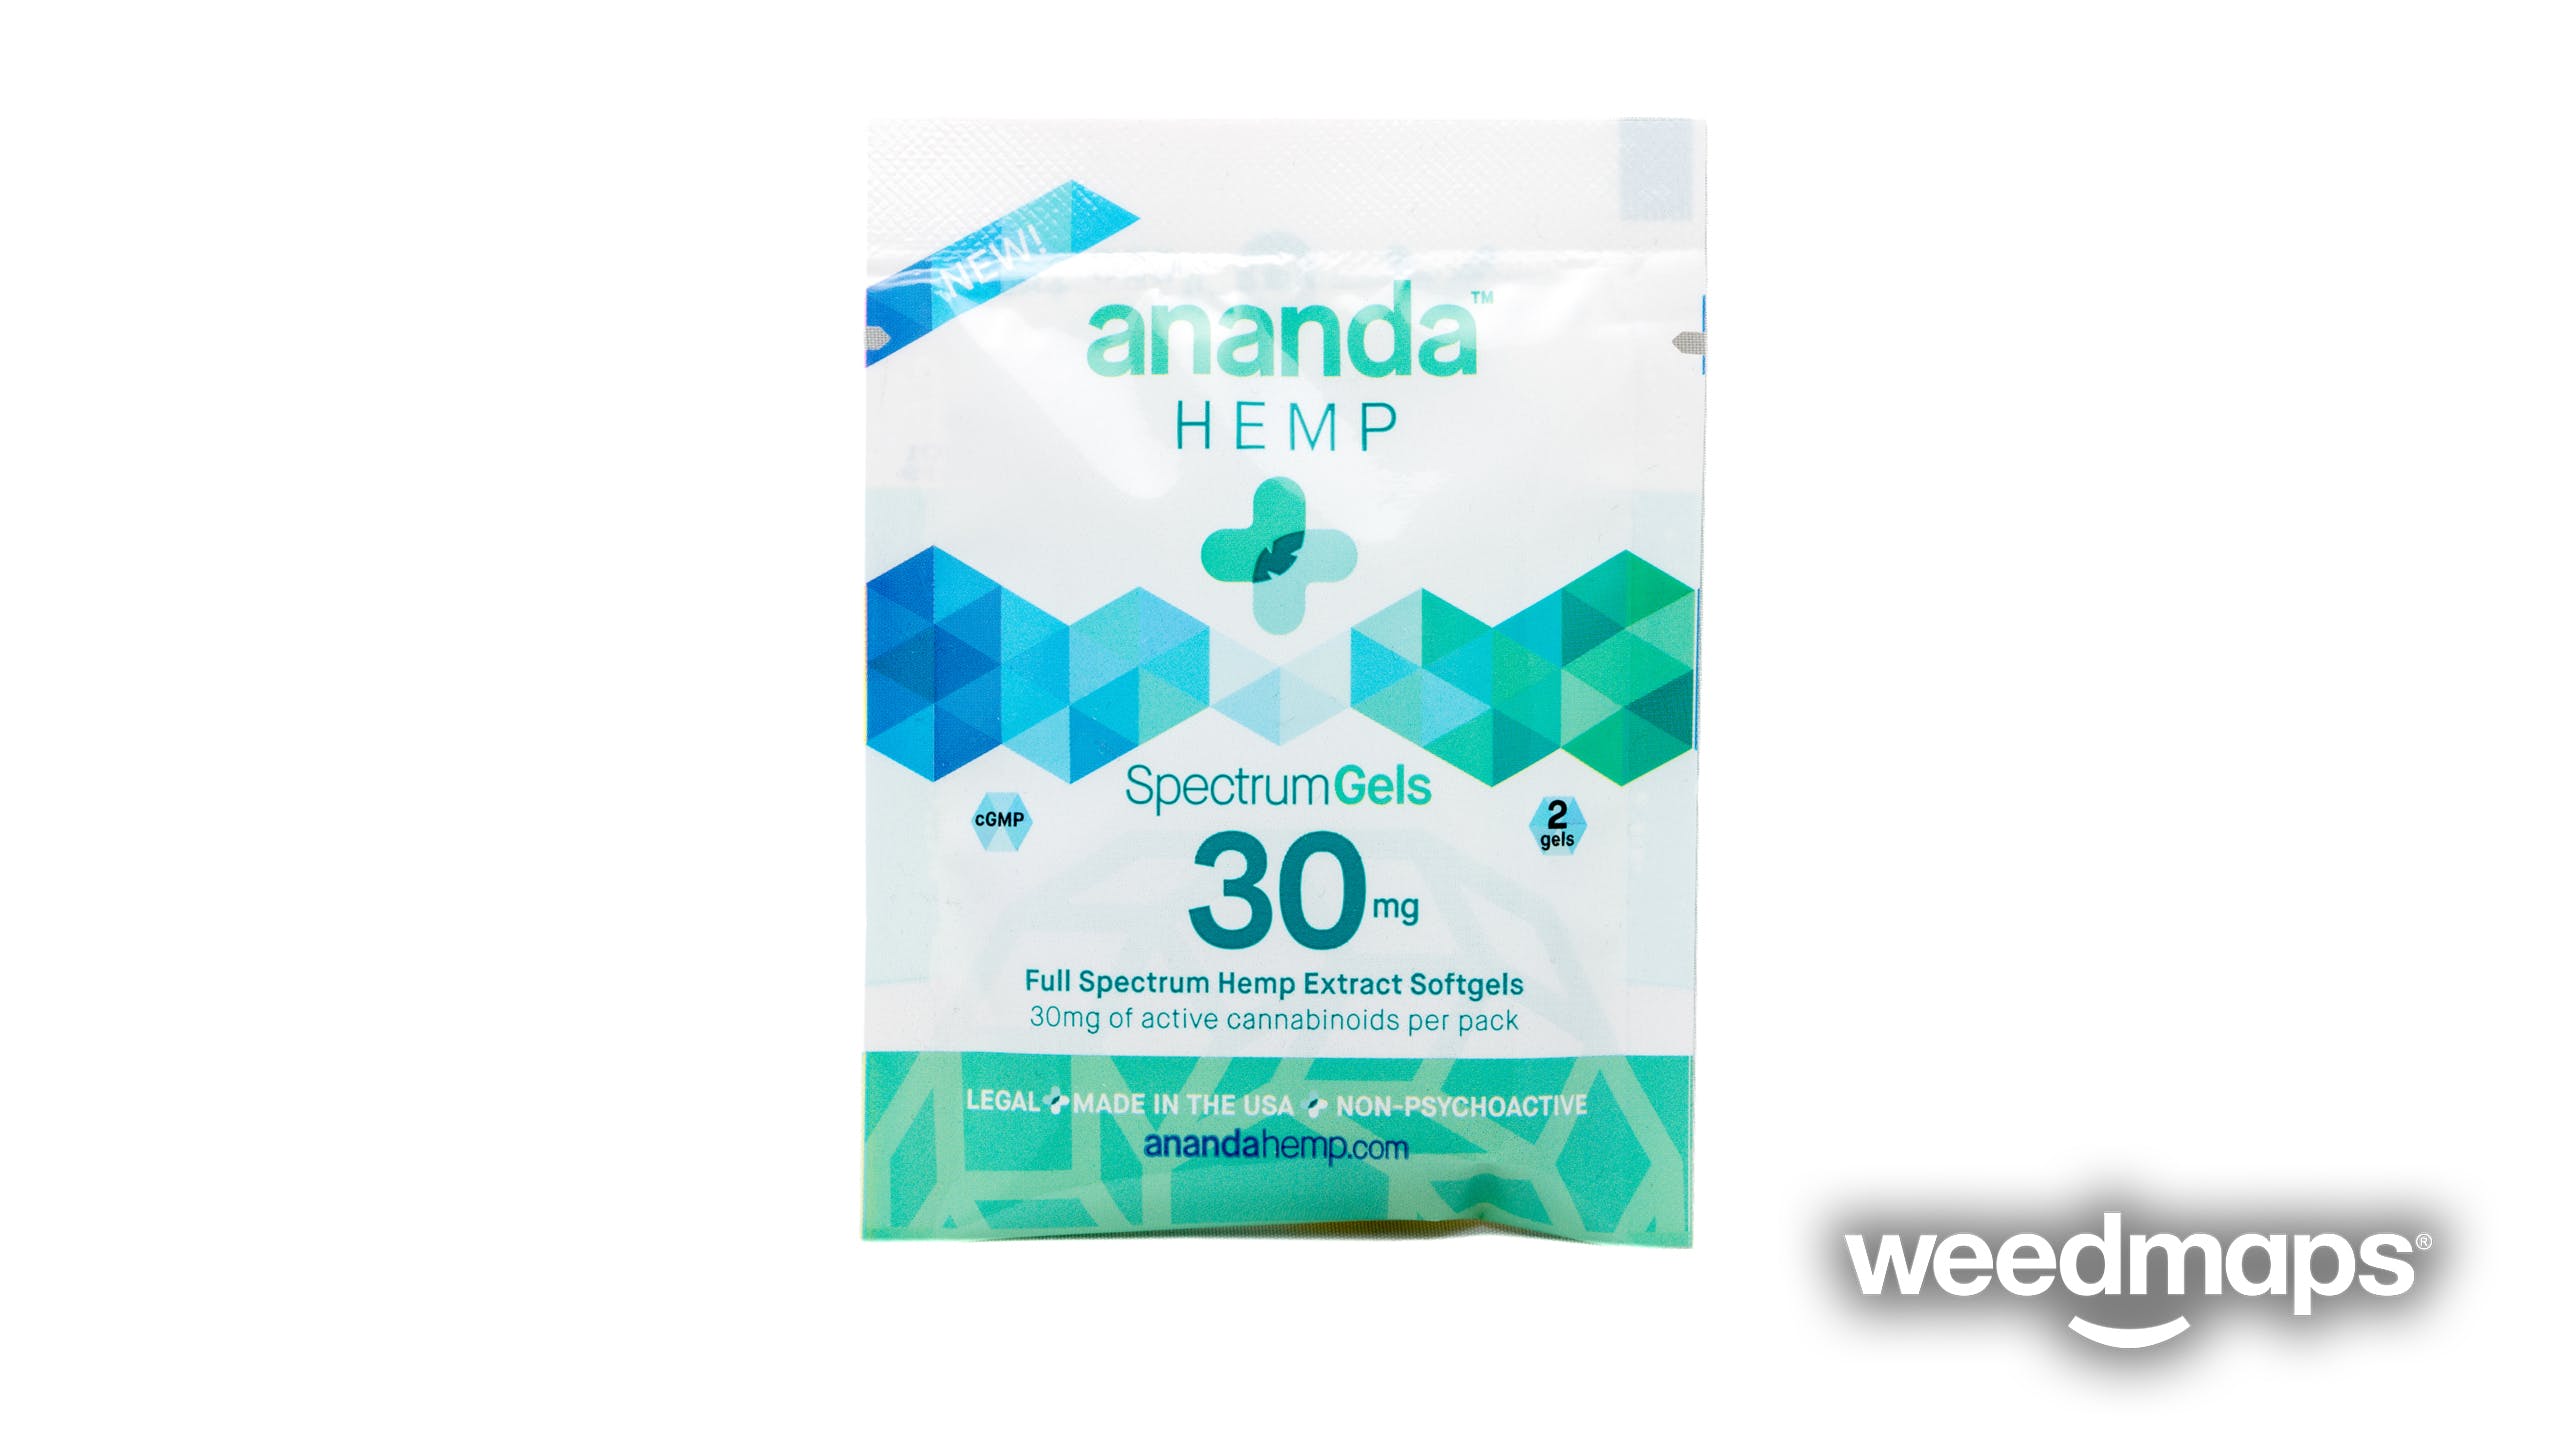 edible-ananda-hemp-2-pack-spectrum-gels-15mg